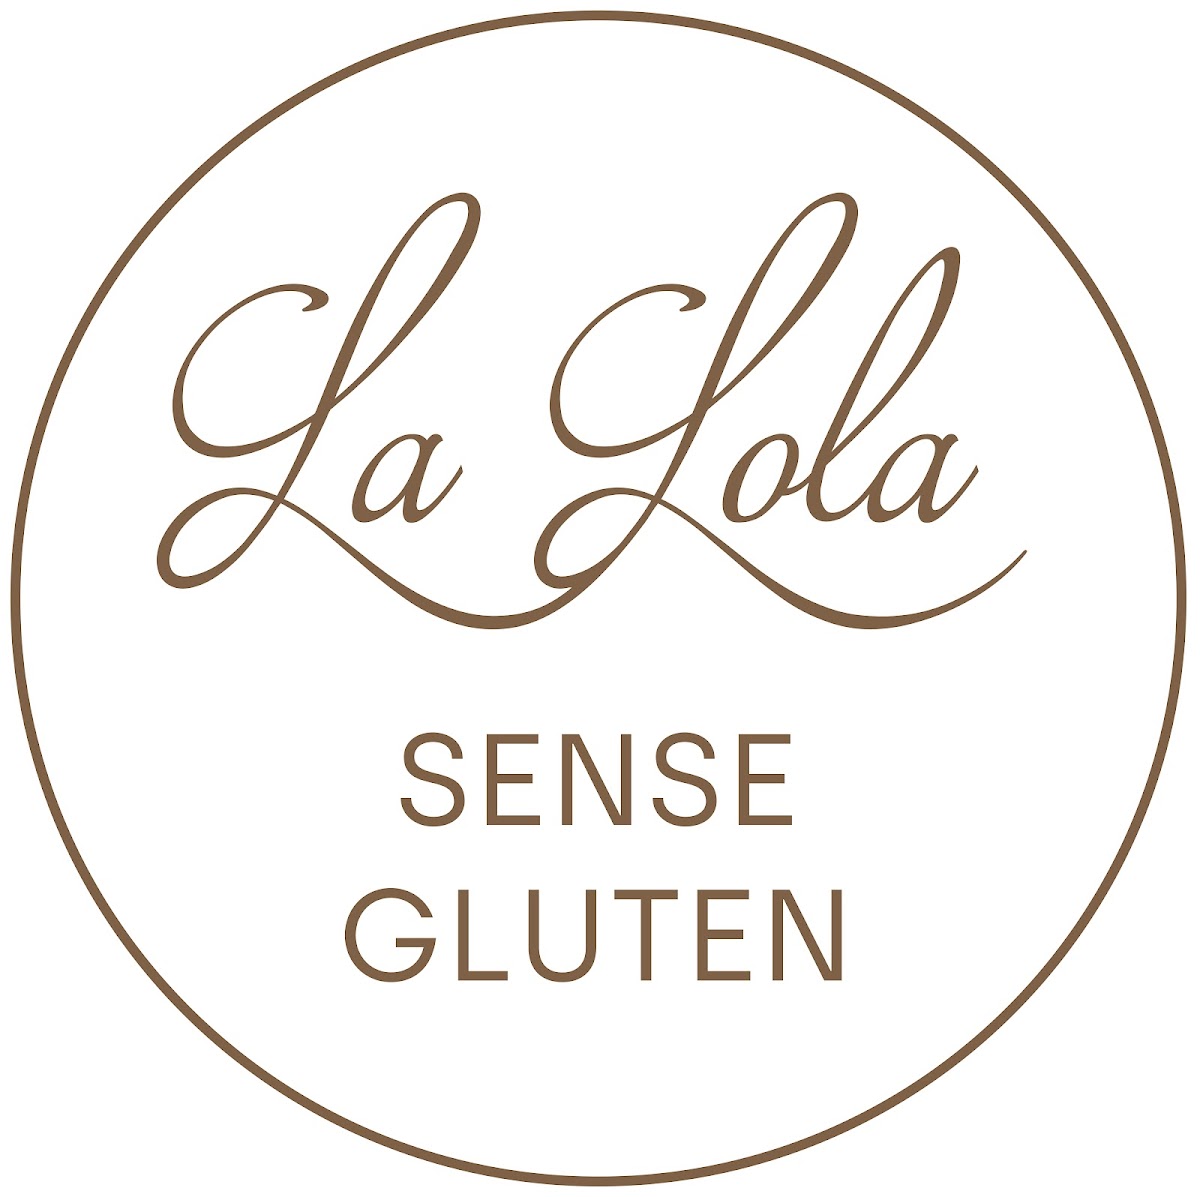 Gluten-Free at La Lola sense gluten